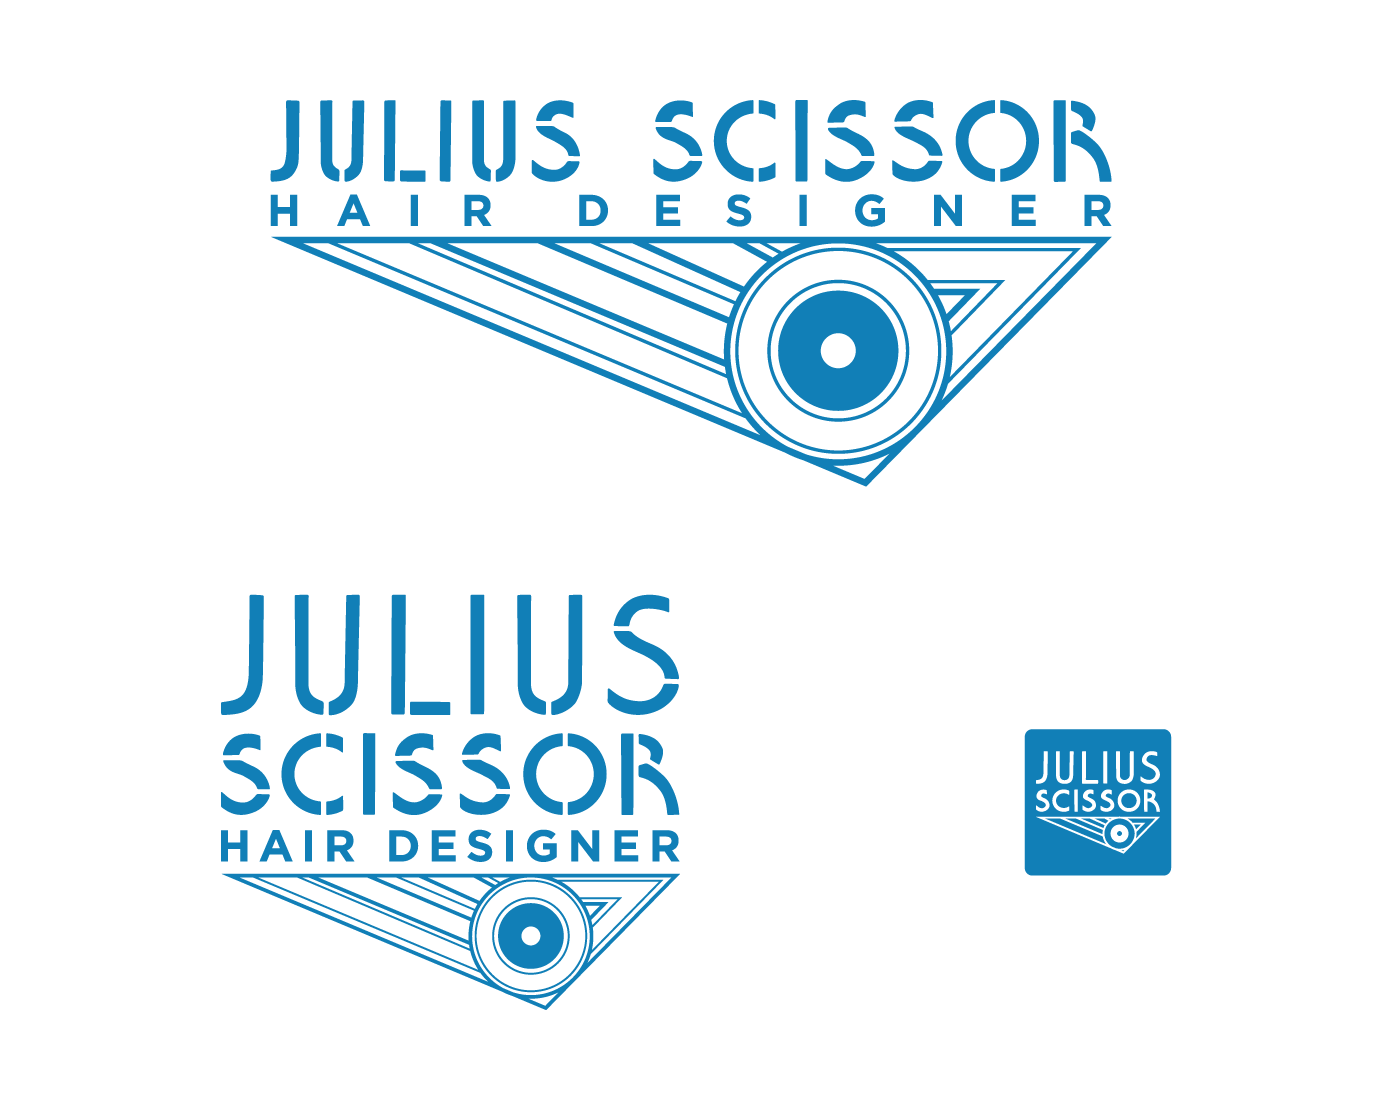 Julius scissor logo.